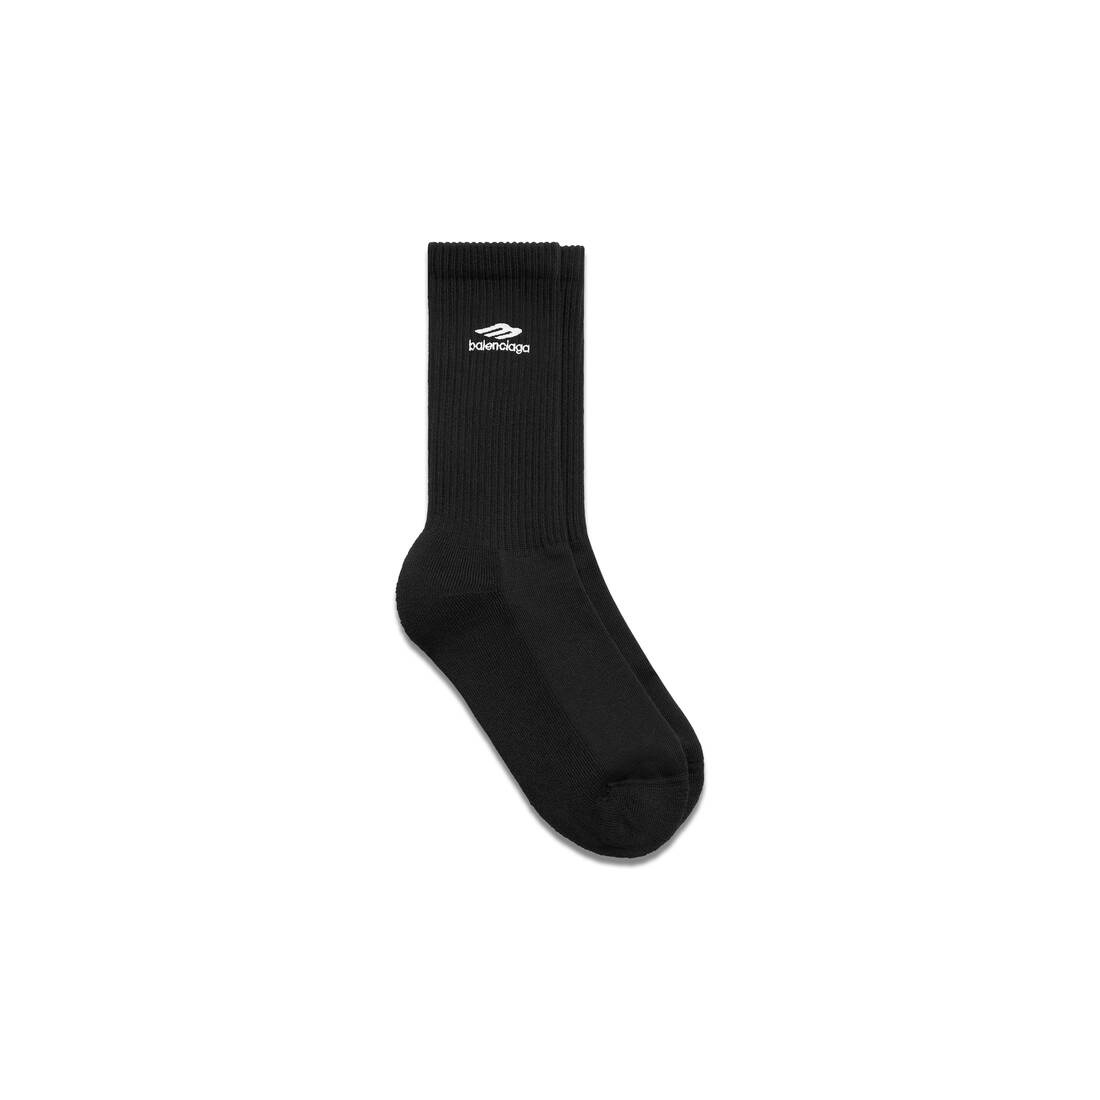 3b Sports Icon Socks in Black/white - 1